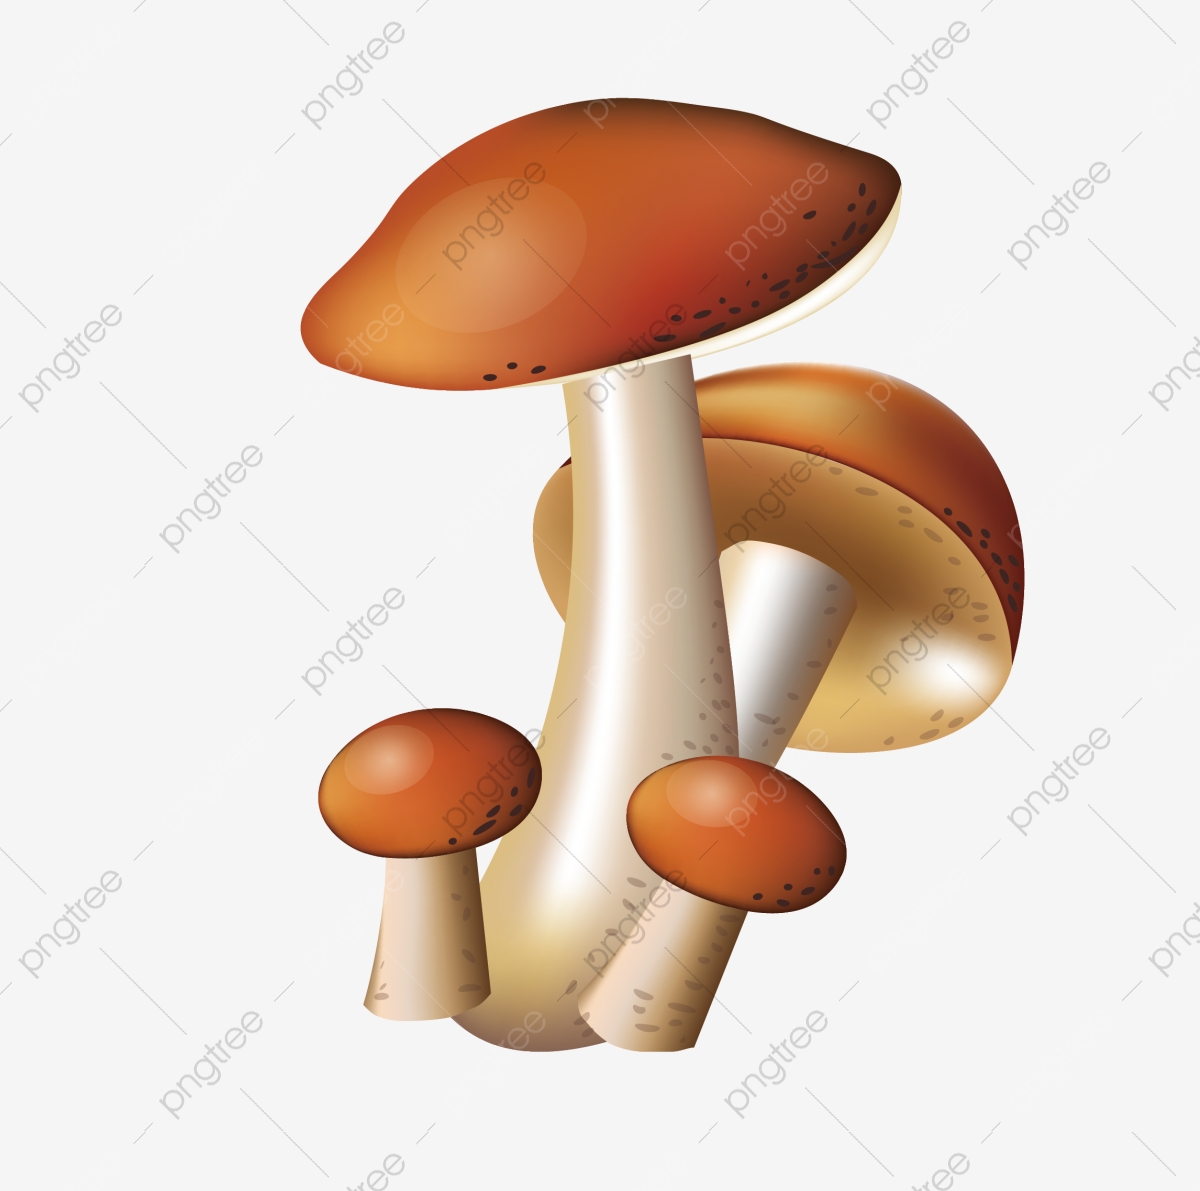 mushroom clipart mushroom vegetable